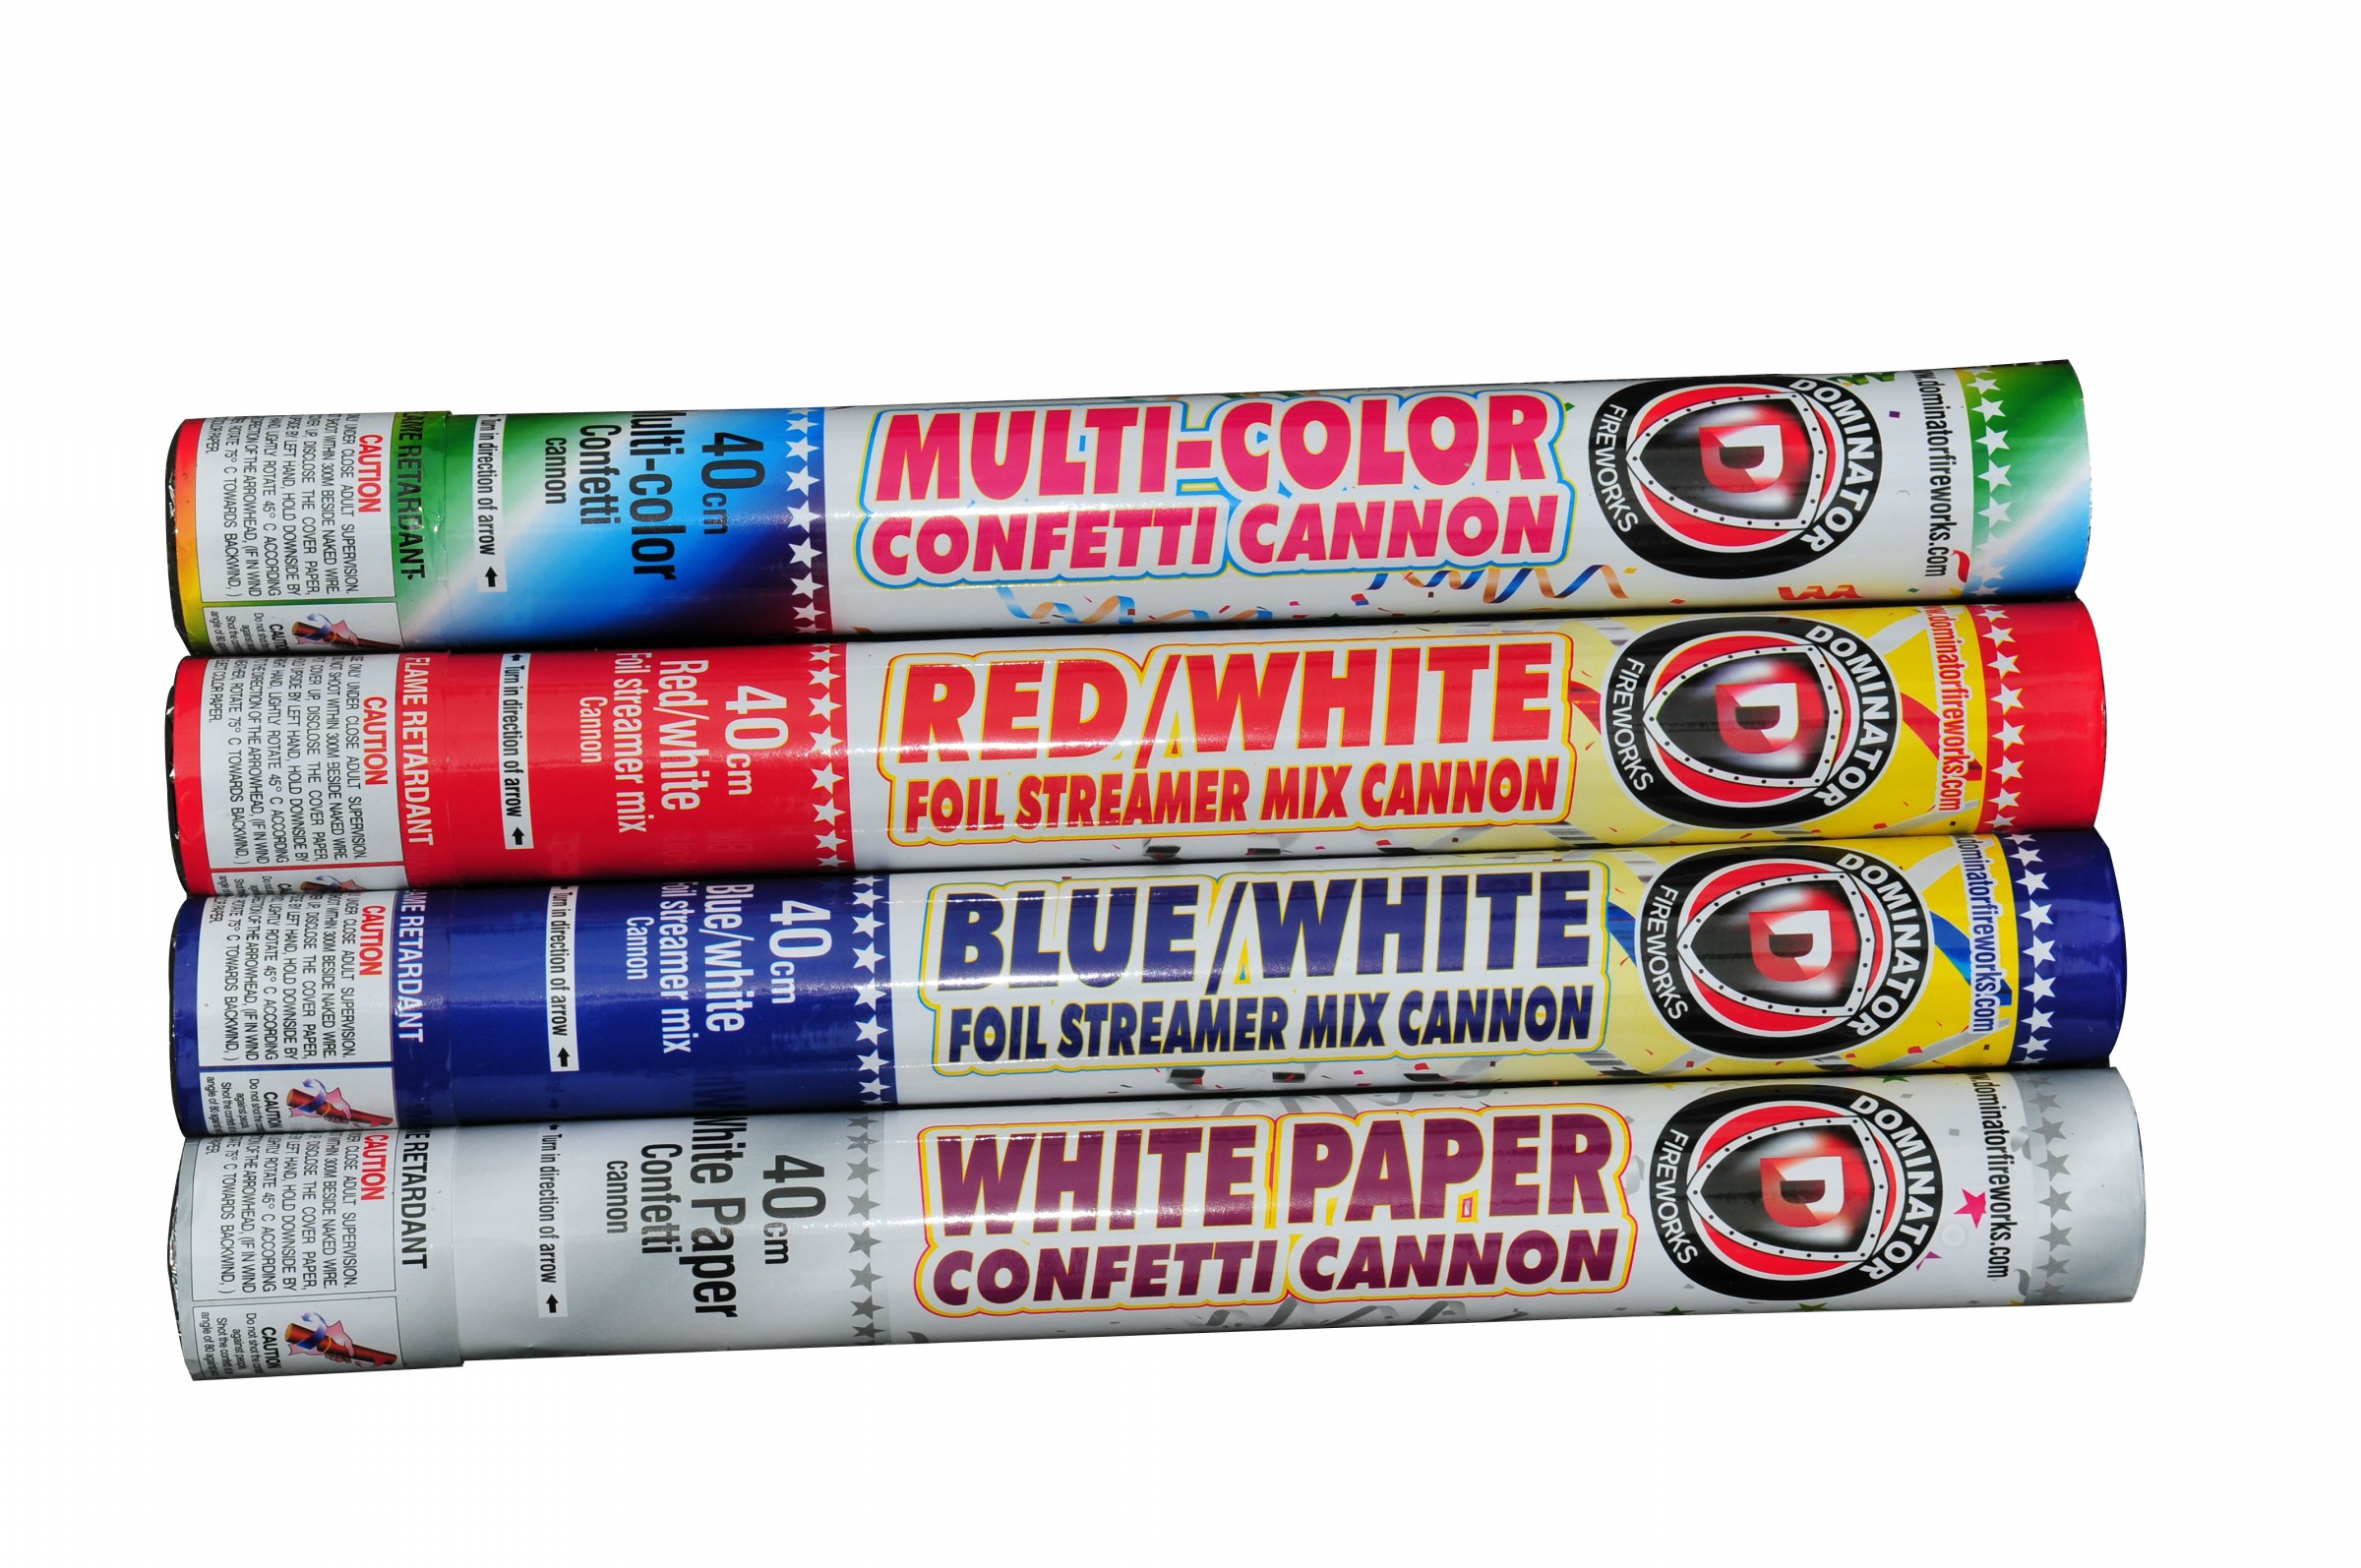 40 Cm Confetti Cannon - Blue/White Foil Streamer Mix